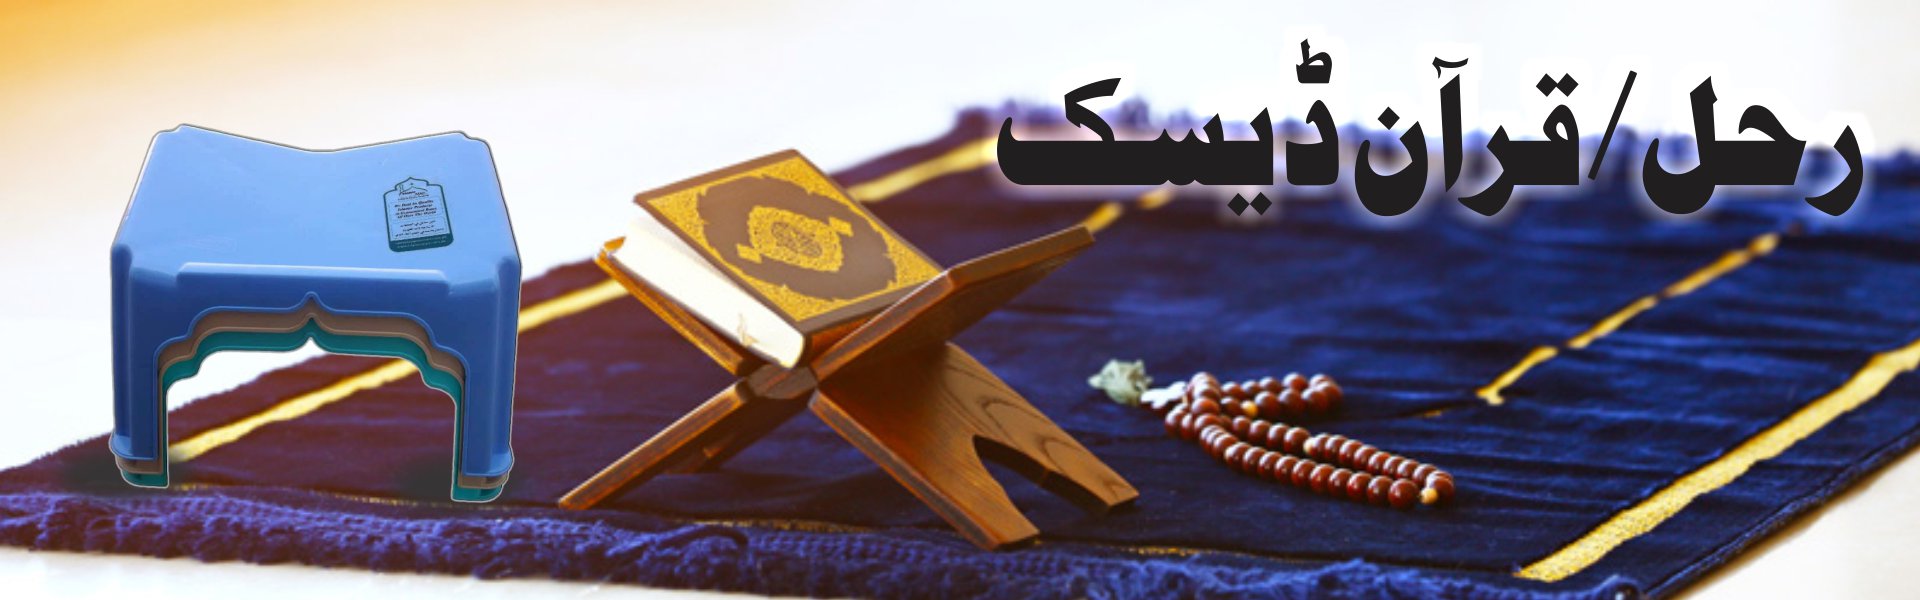 10-Rehal Quran Desk